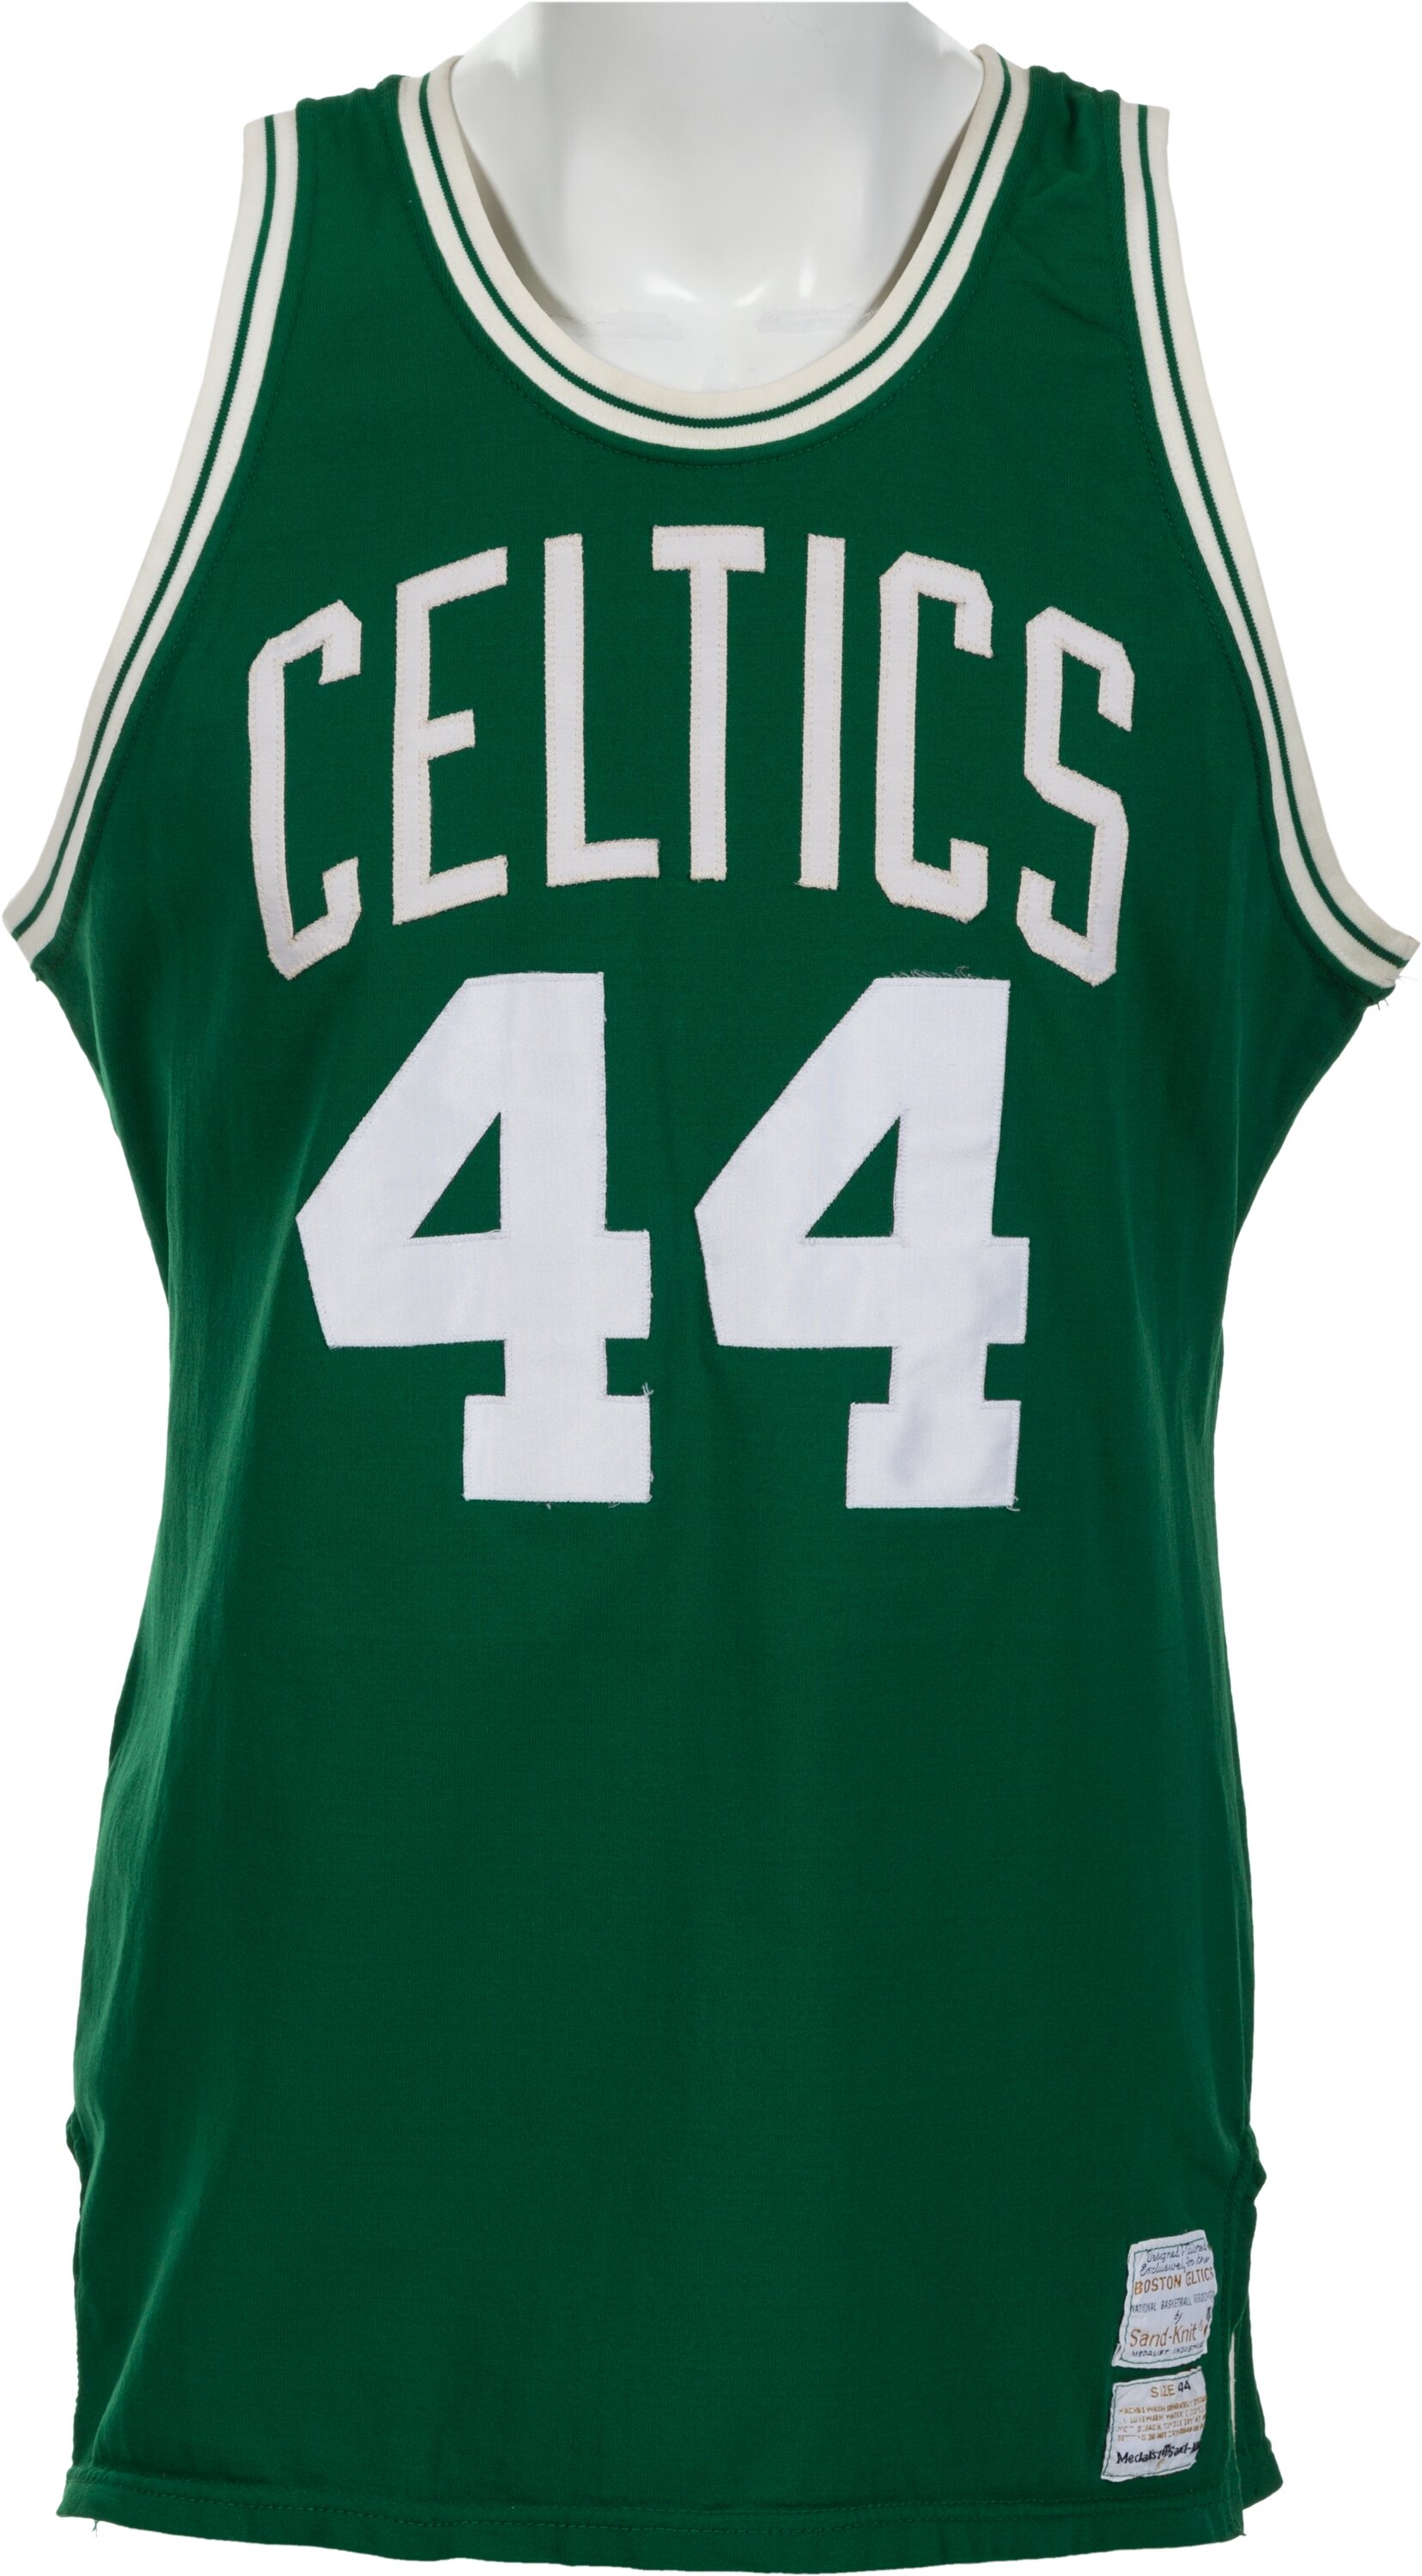 Digital File Boston Celtics Jersey Personalized Jersey NBA 